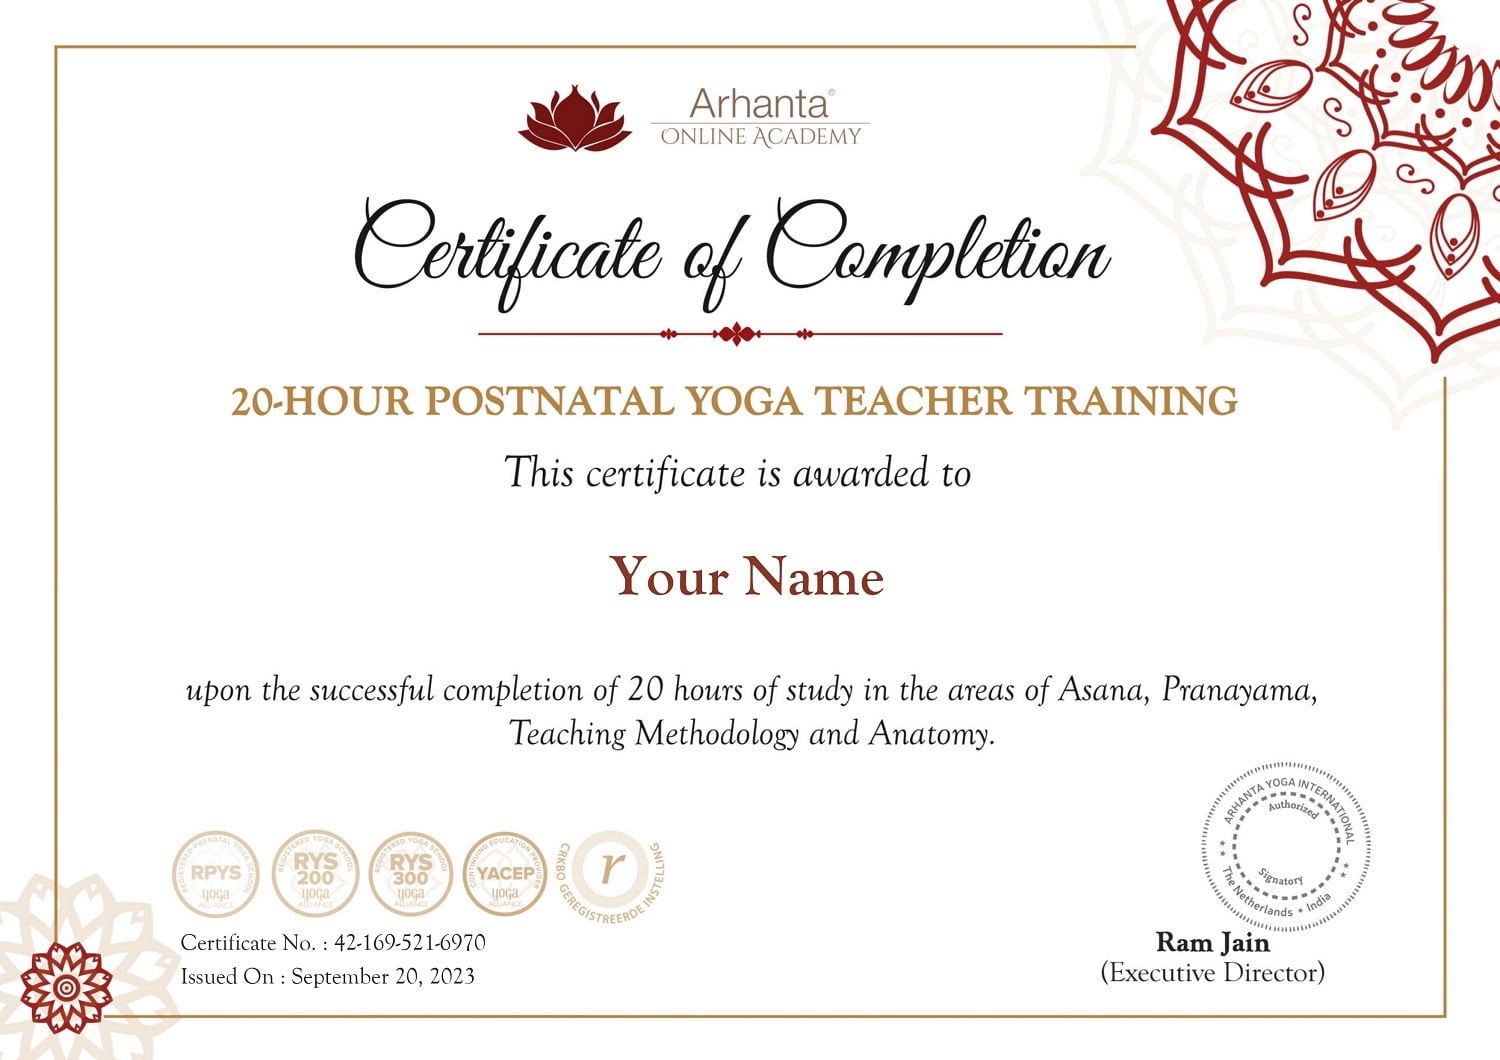 Certificado-de-formacion-de-profesores-de-yoga-postnatal-en-linea-de-20-horas